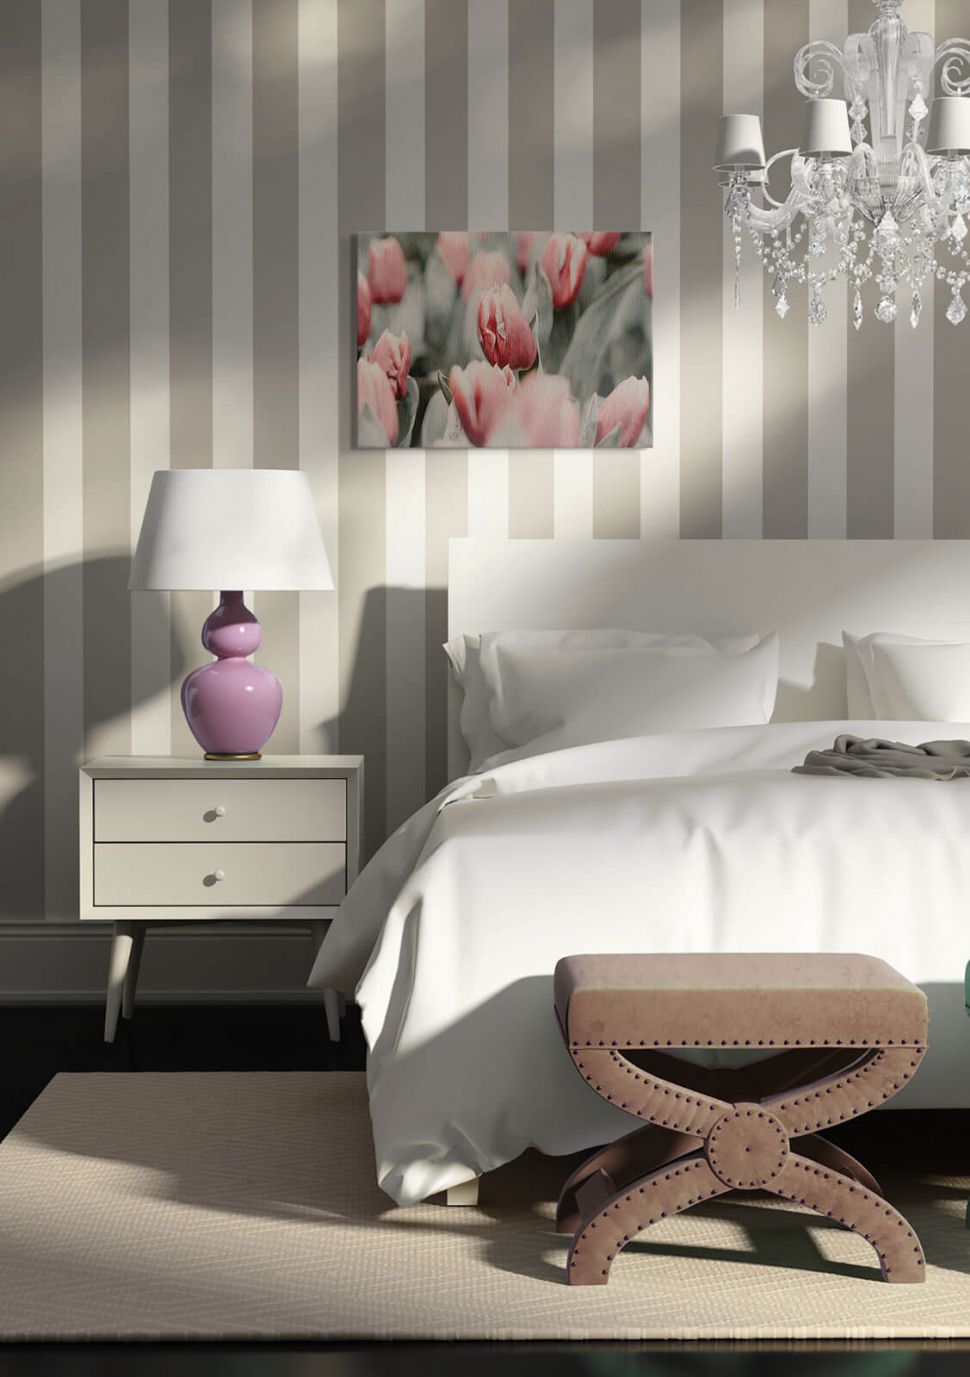 Obraz na płótnie Różowe tulipany powieszony w sypialni nad łóżkiem